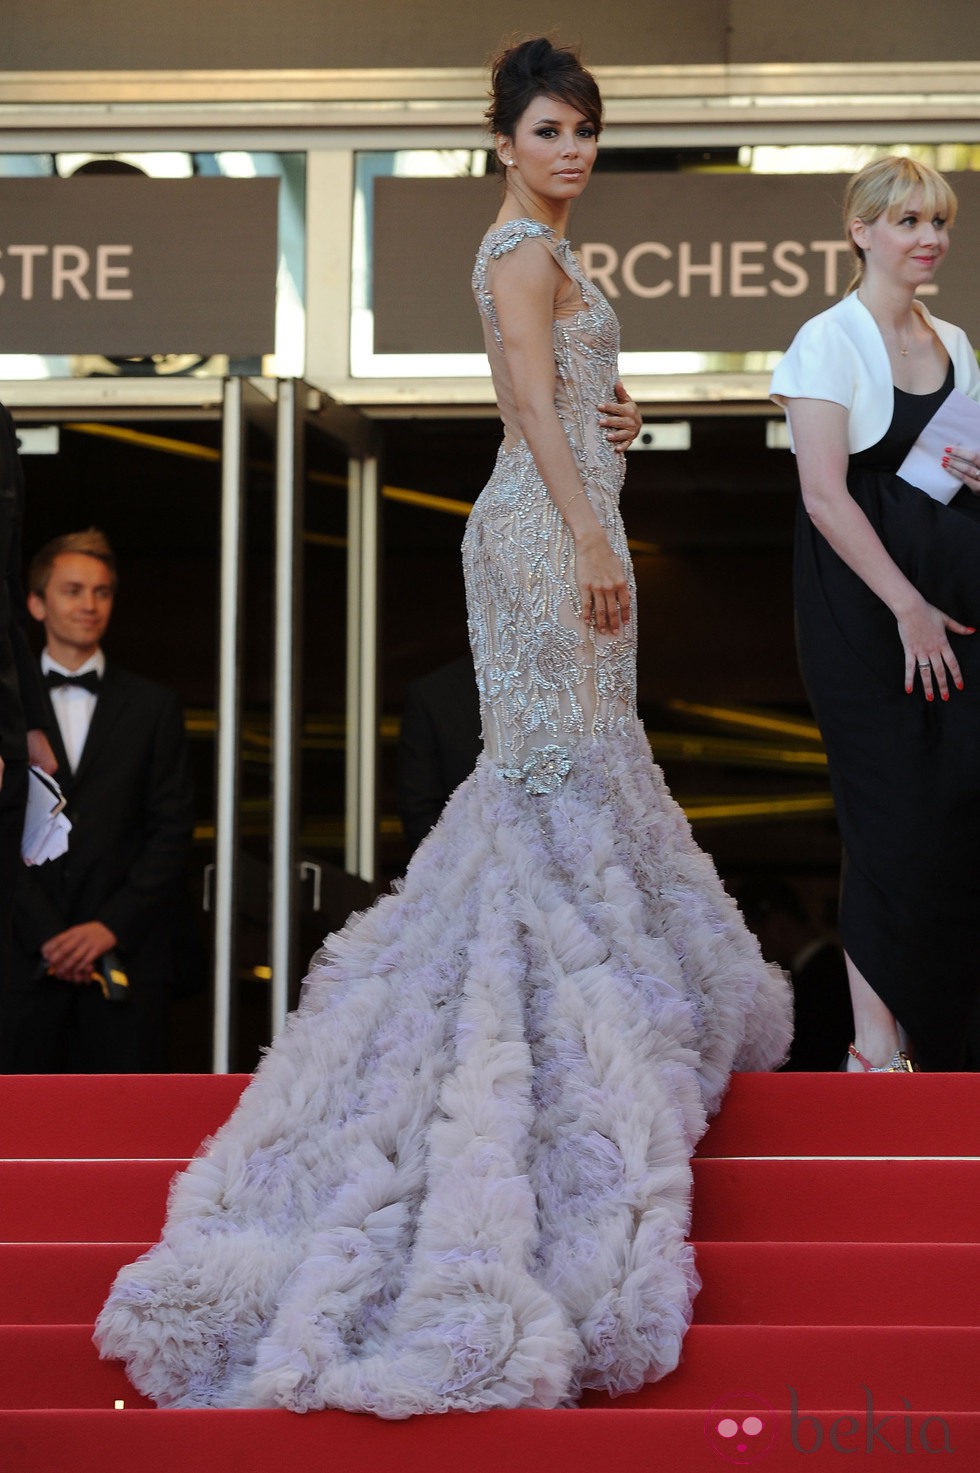 Eva Longoria presume de vestido en la apertura del Festival de Cannes 2012